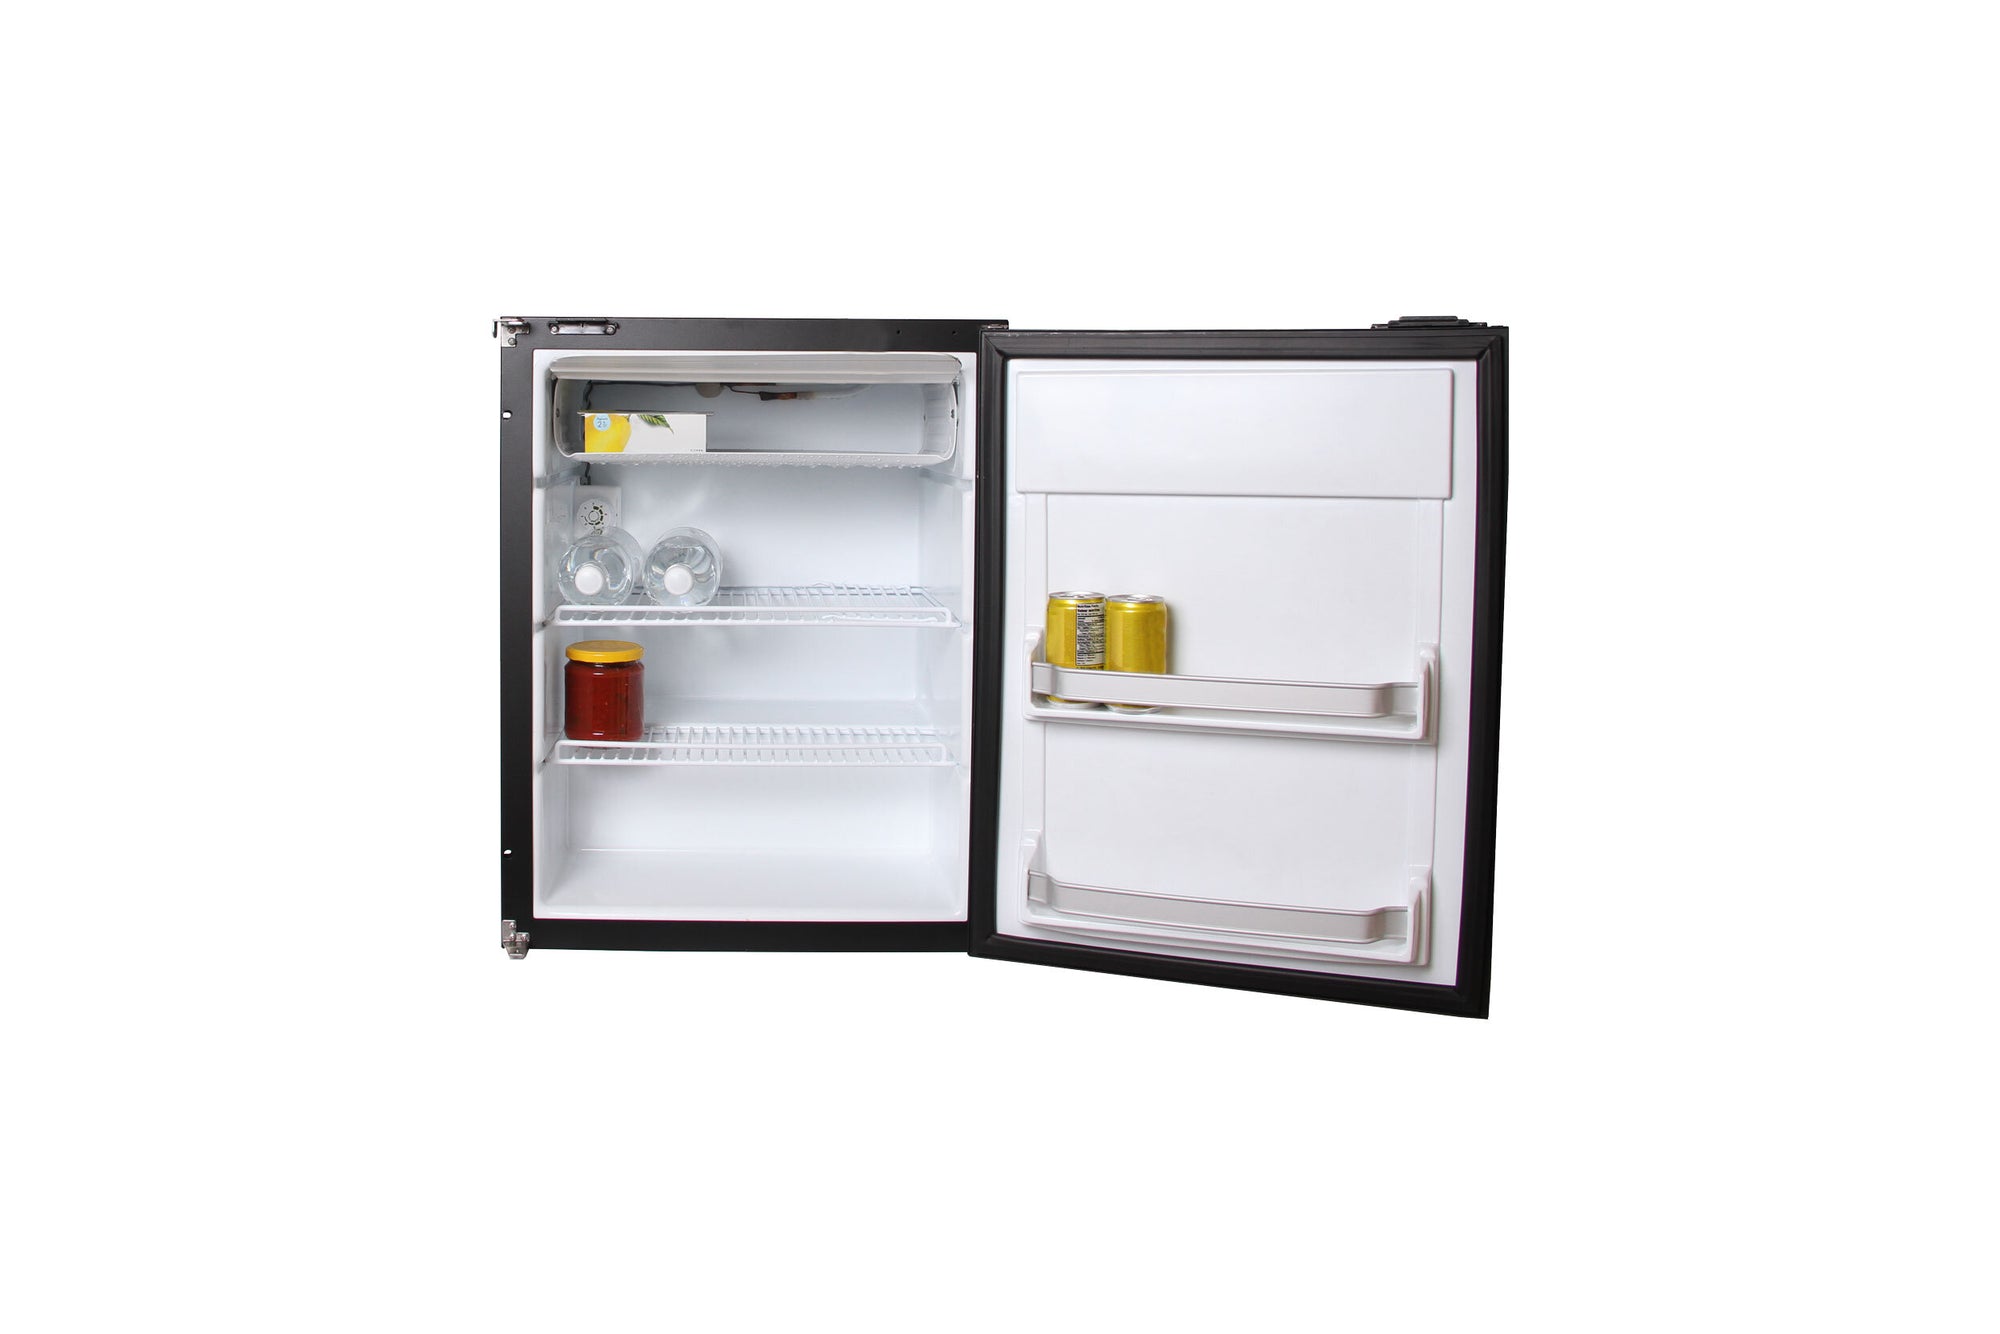 Réfrigérateur Novakool R3000 (2.5pi3 dont 0.25pi3 Congélateur)